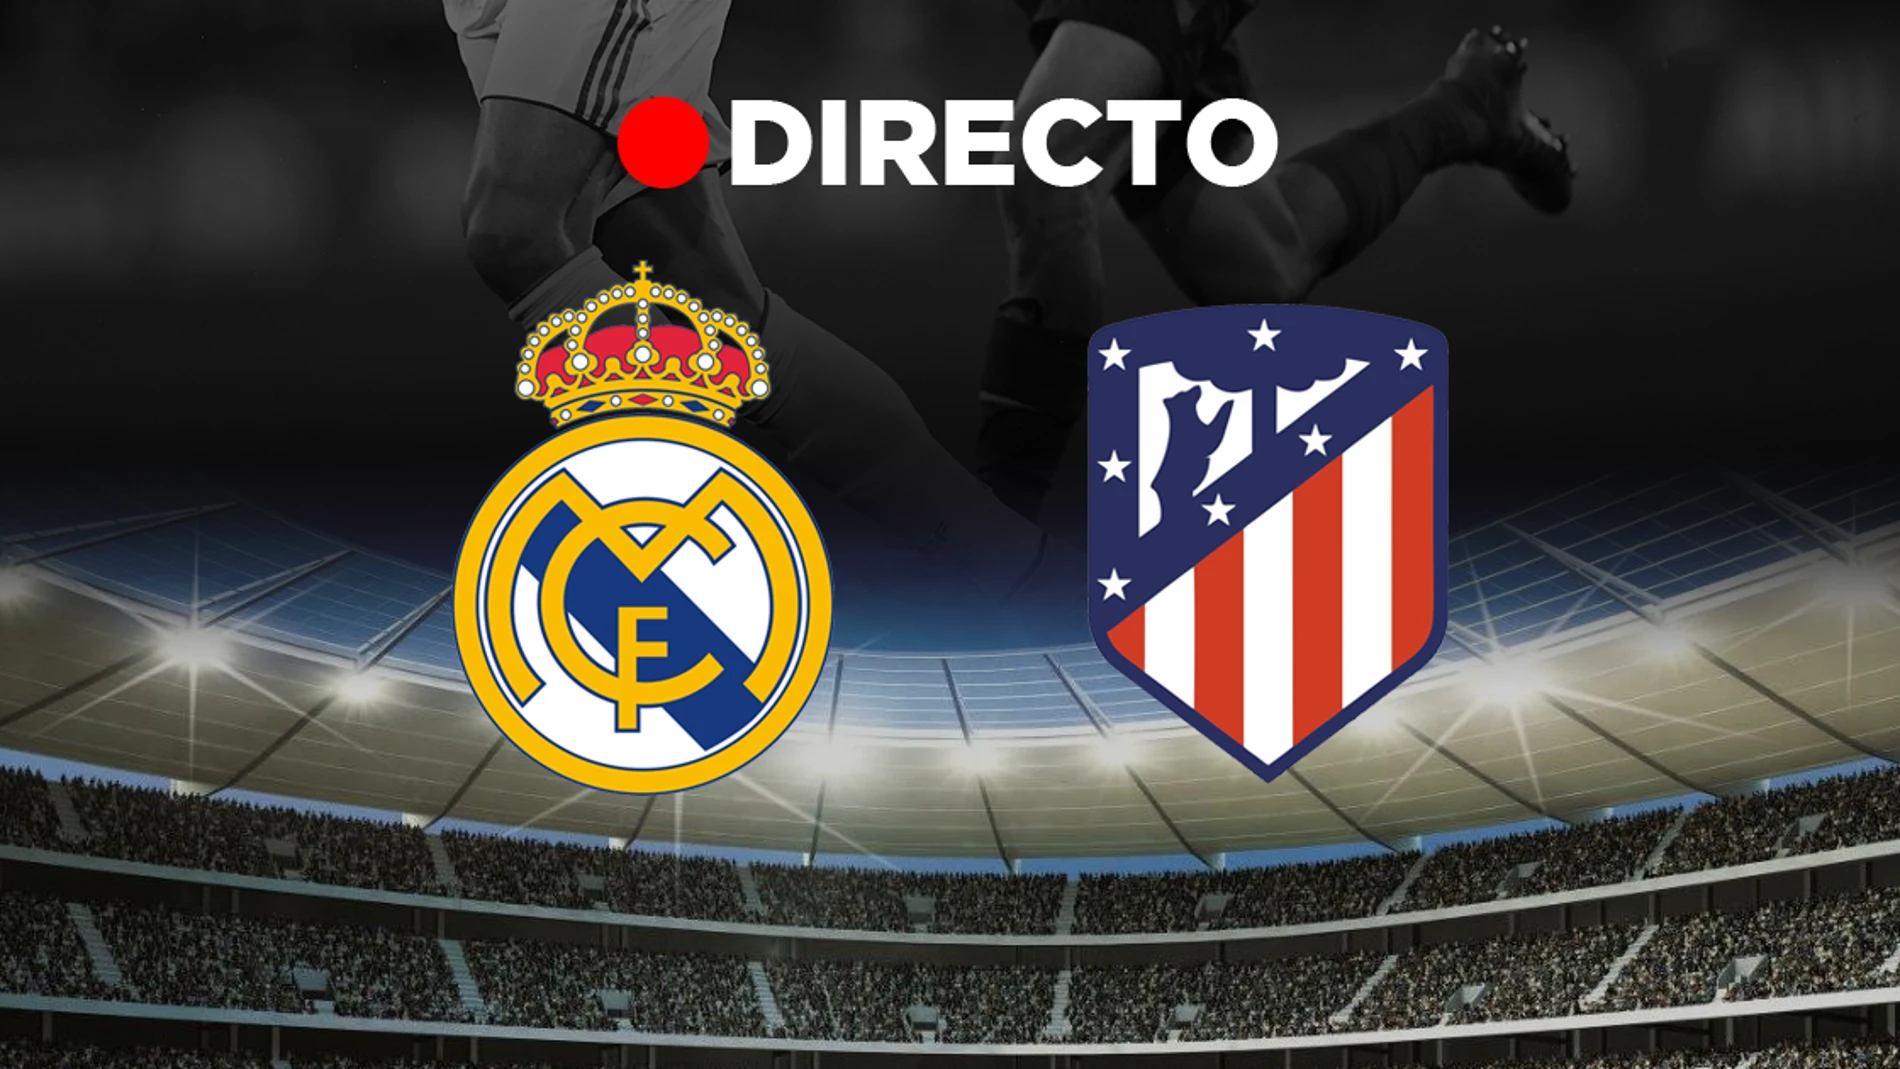 Real Madrid - Atlético | Partido hoy, resultado y goles | Directo